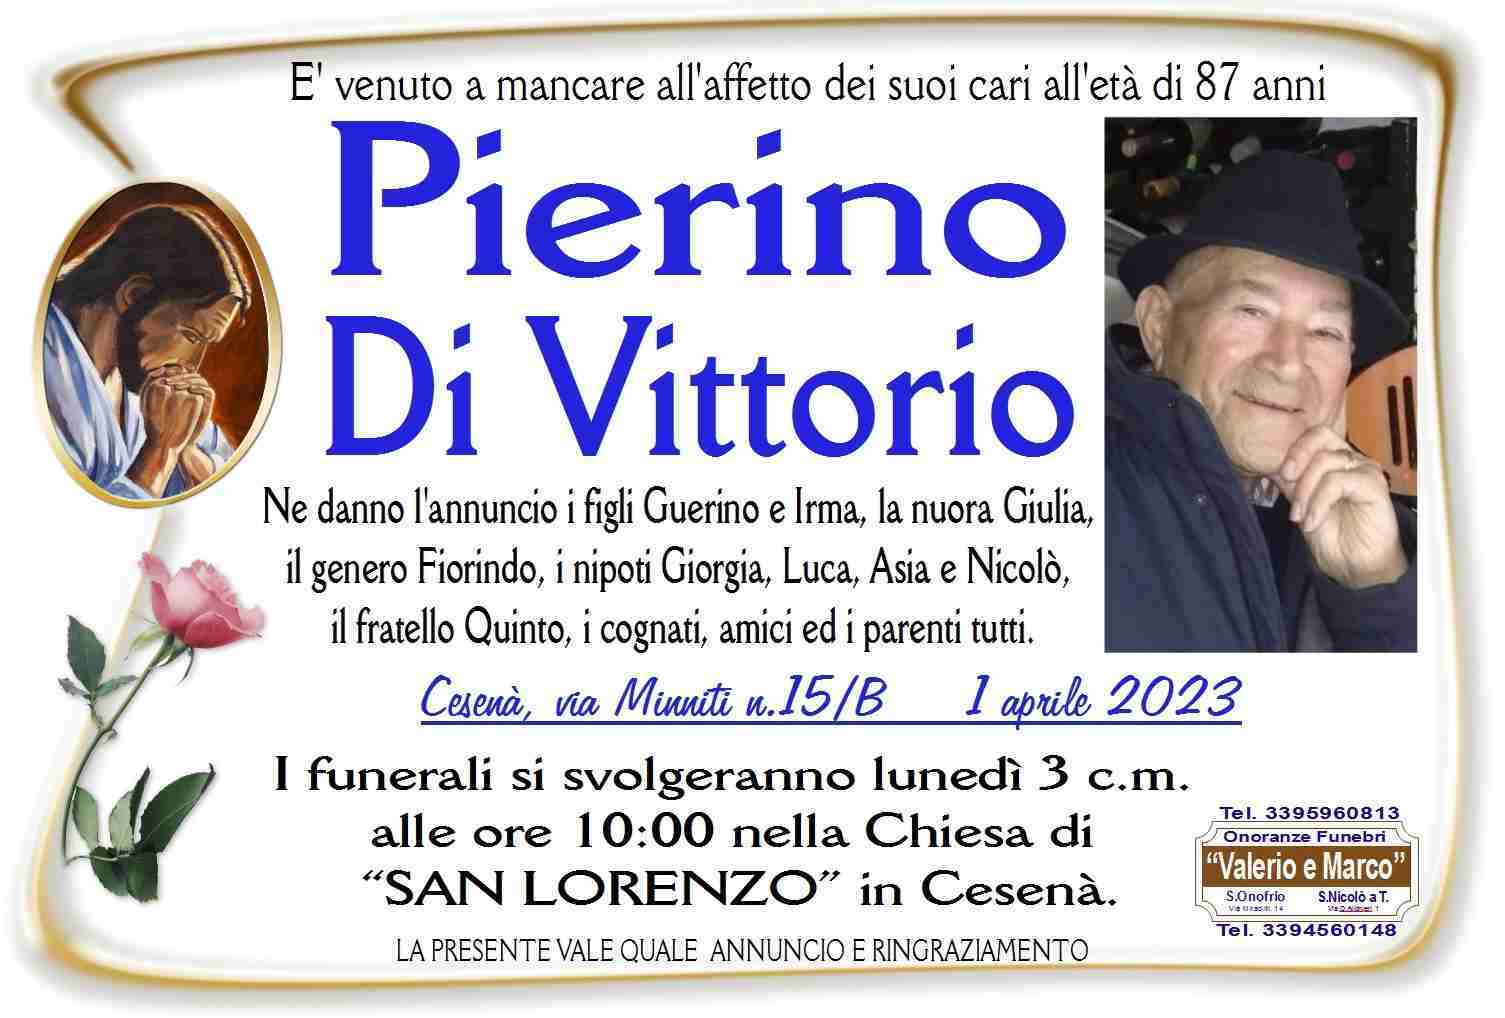 Pierino Di Vittorio